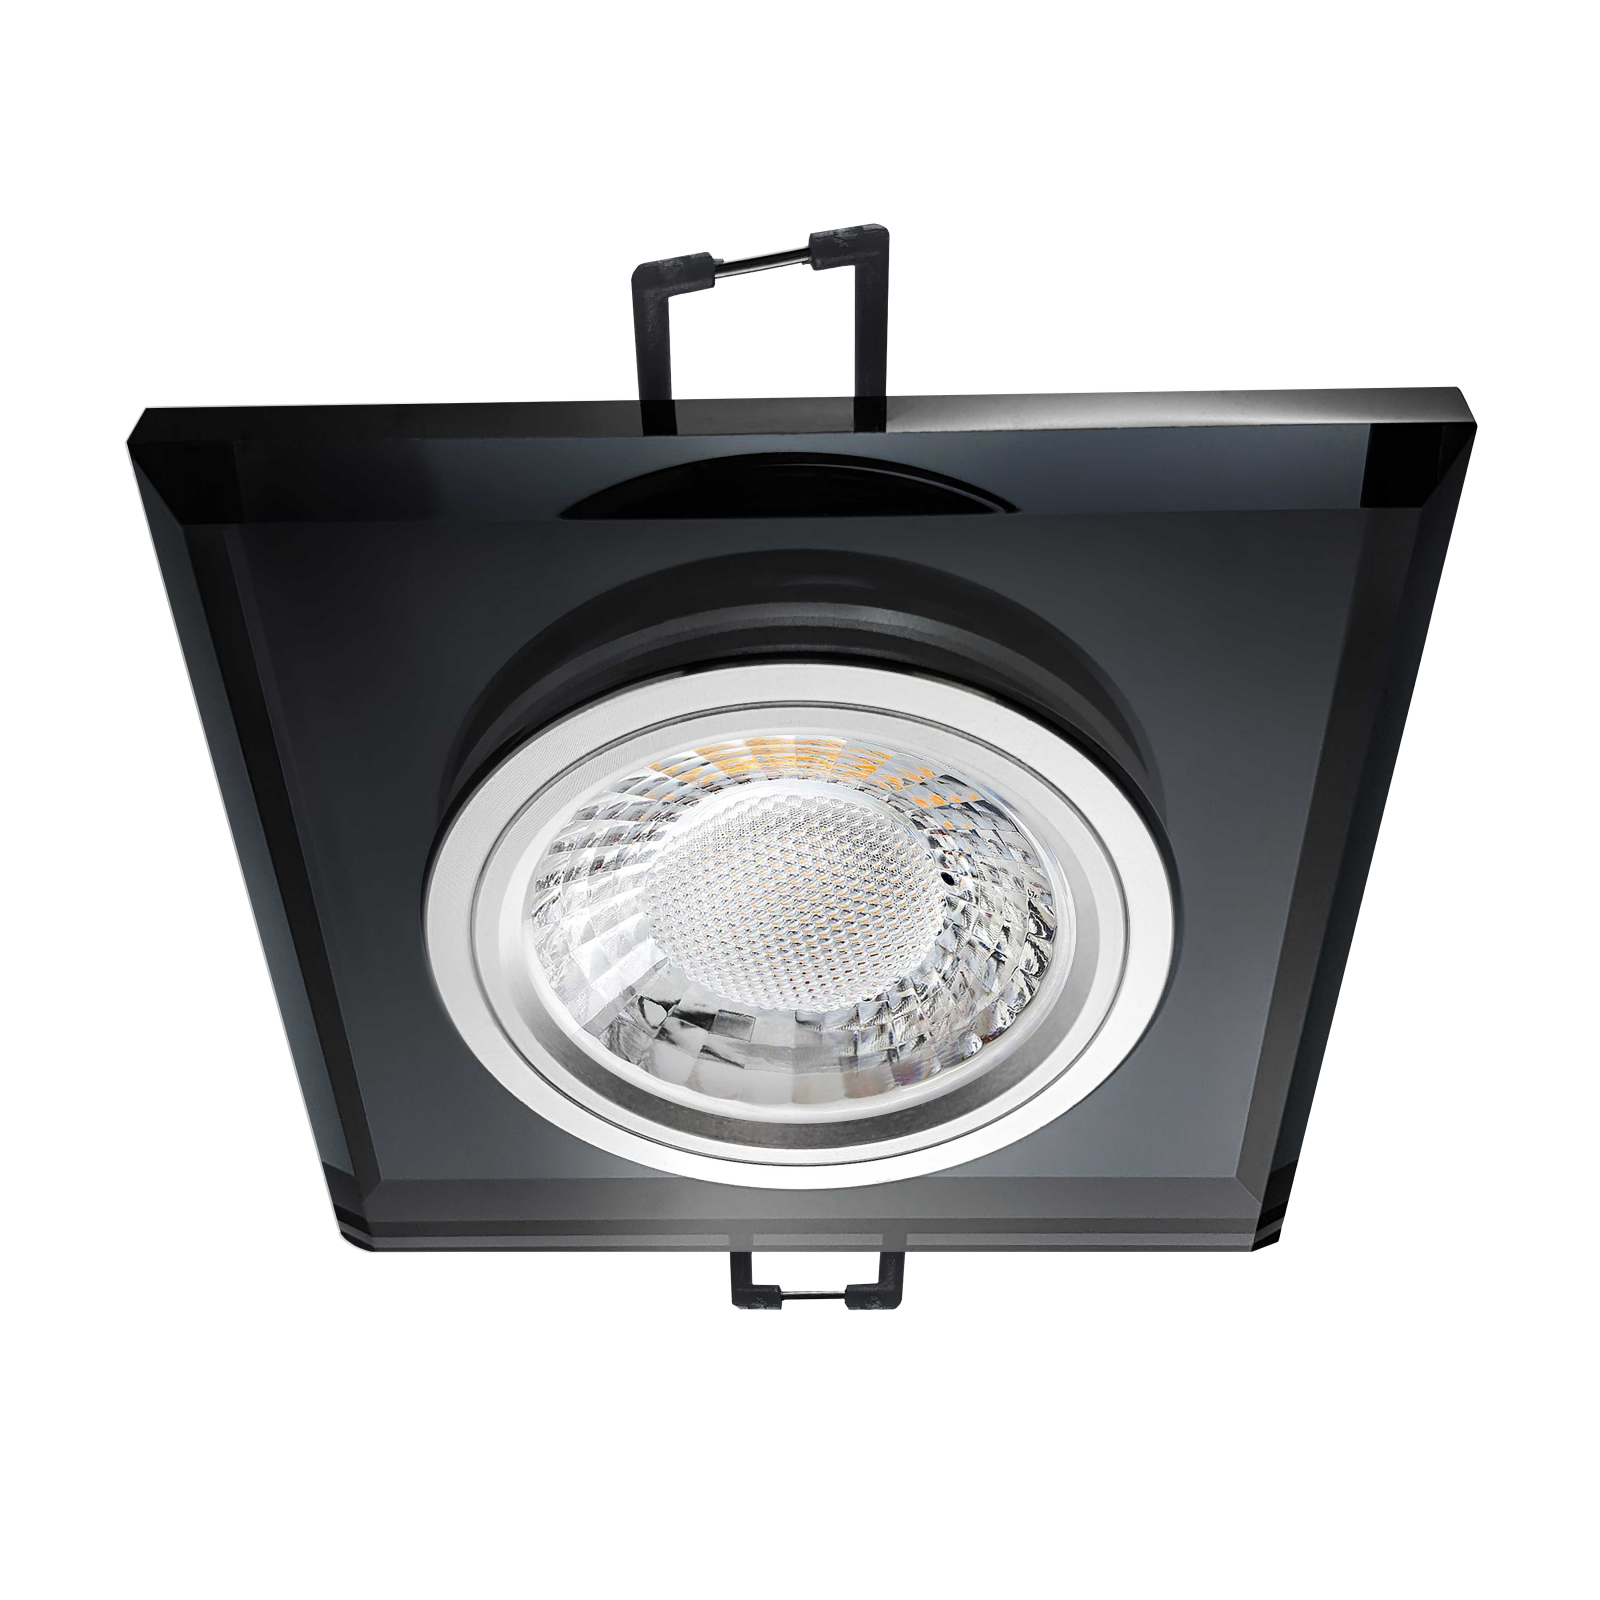 LED Einbaustrahler schwarz spiegelnd | Quadratischer Einbauspot Echtglas | Lochmaß Ø 68mm - 80mm | Einbautiefe 64mm | Anschlussfertig mit GU10 230V Fassung 